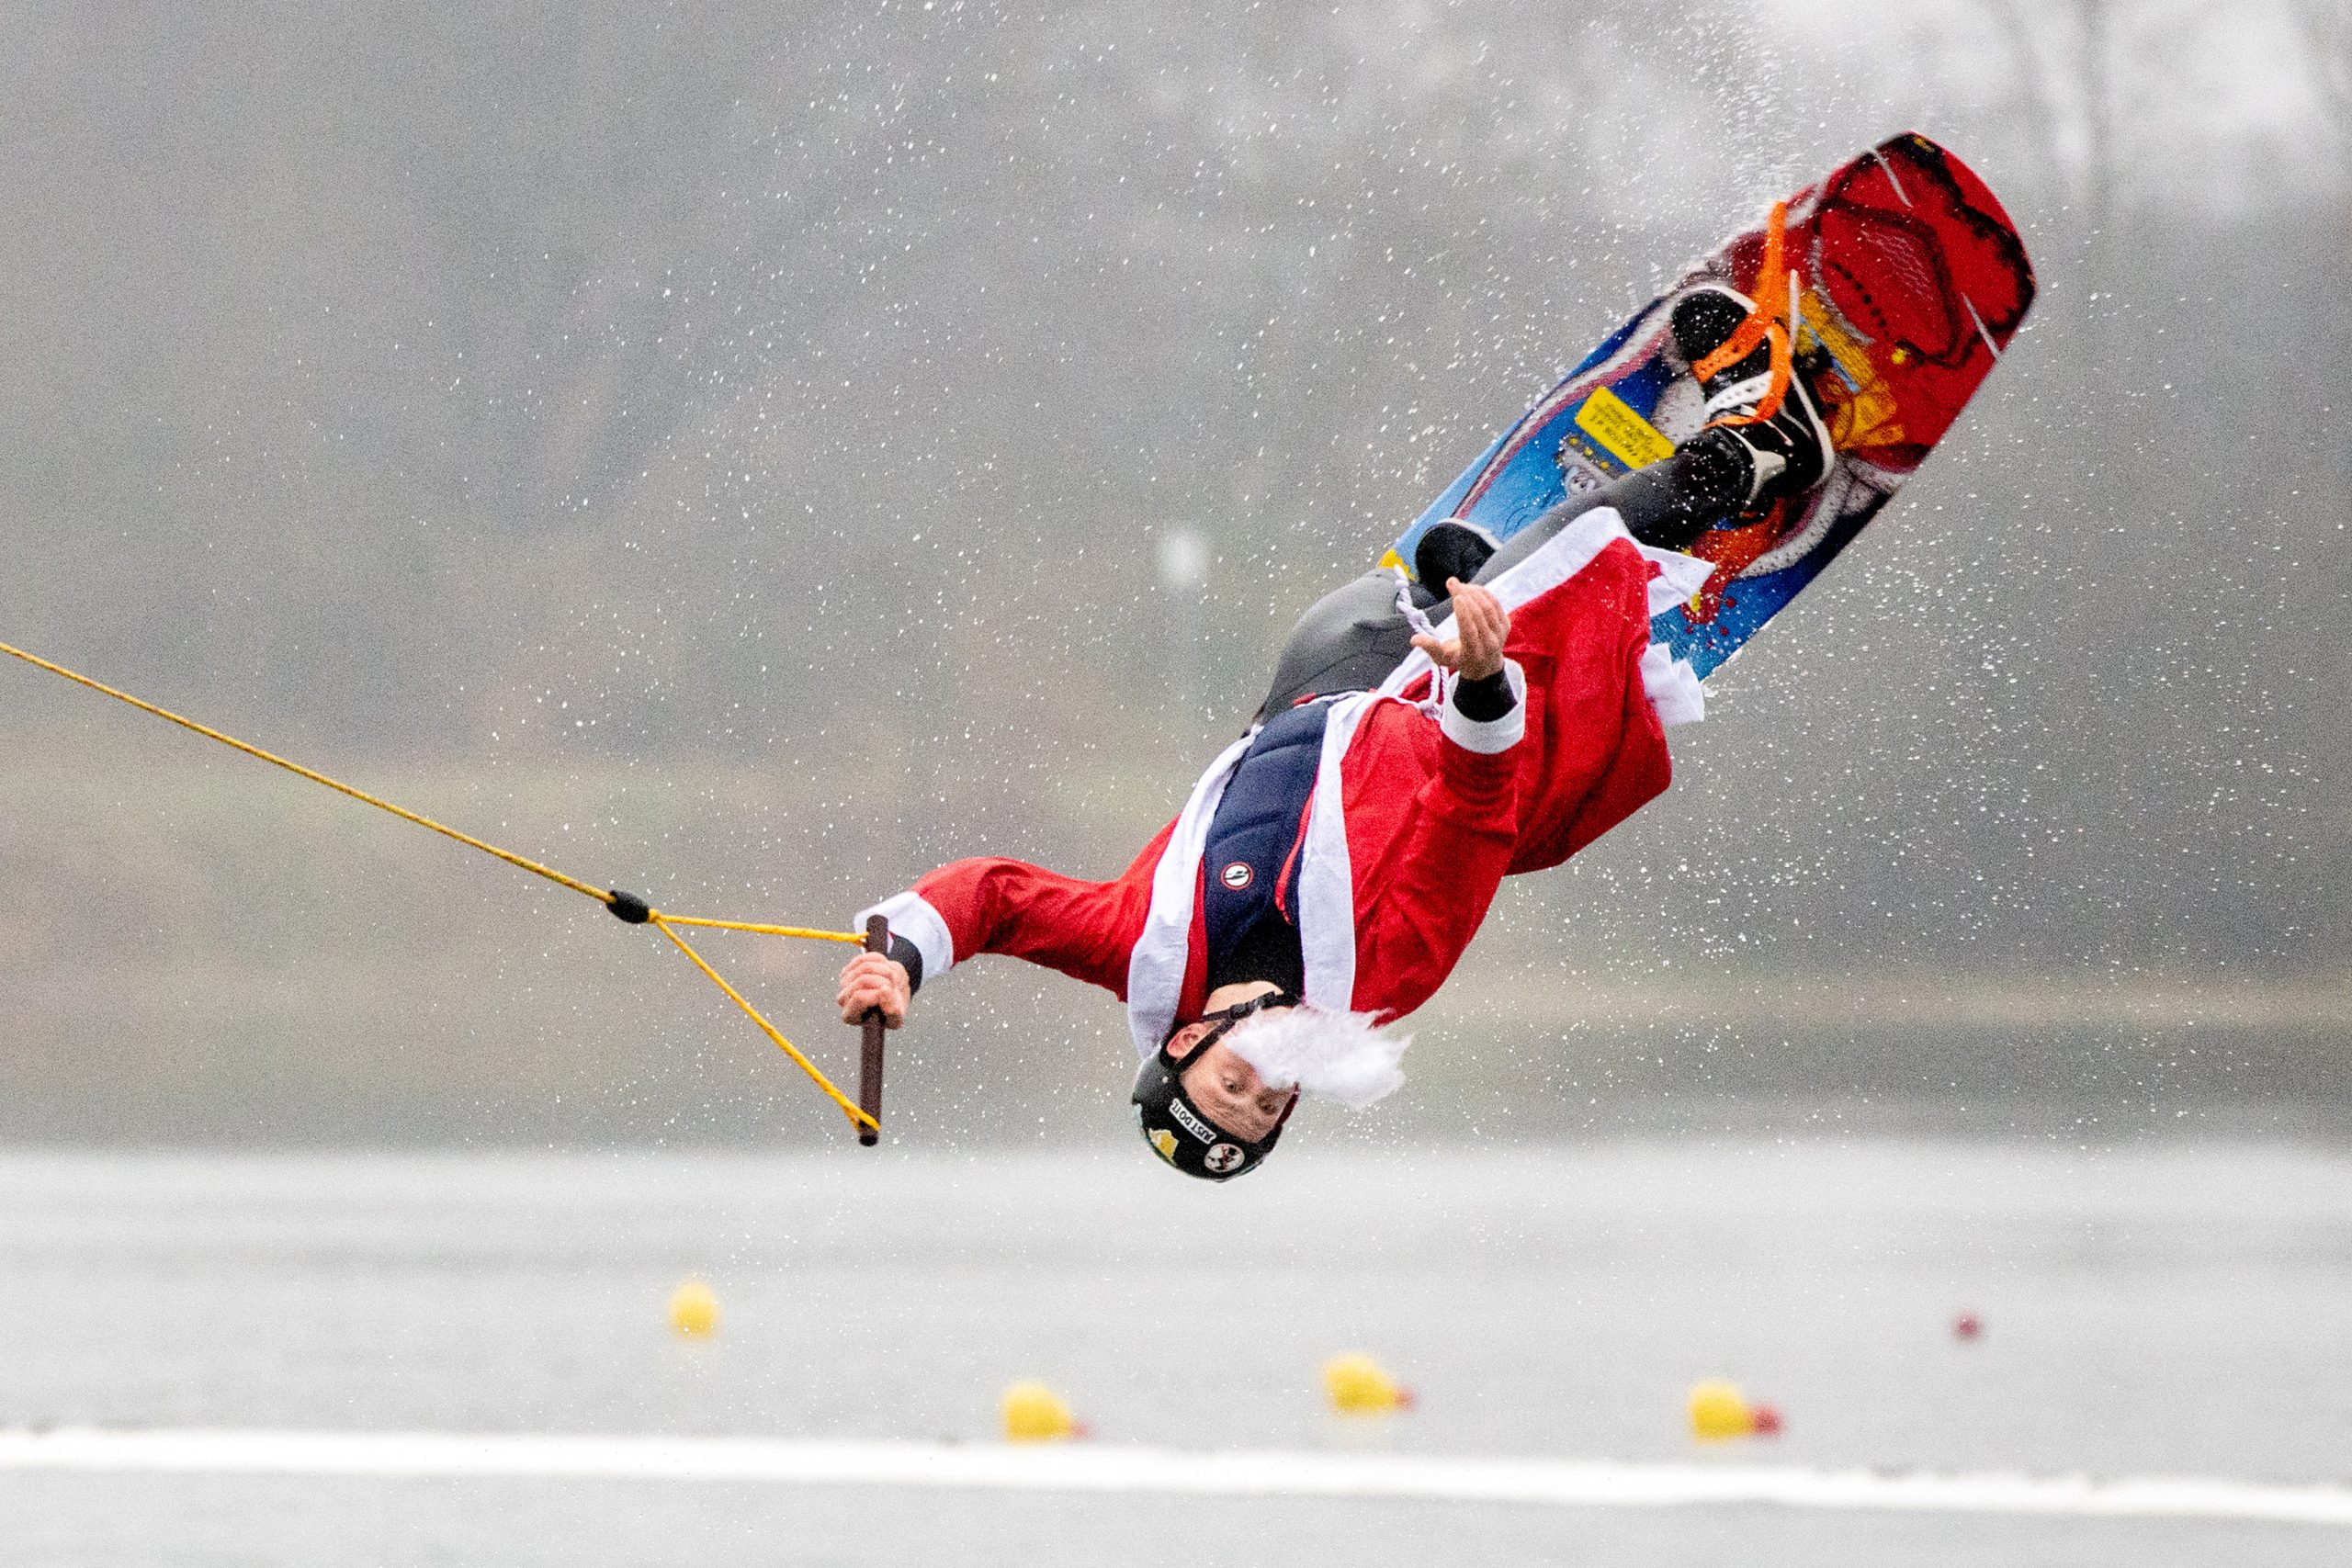 Teilnehmer Wilke springt, verkleidet als Weihnachtsmann, mit seinem Wakeboard über eine Rampe im Badesee des Ortsteils Tannenhausen.